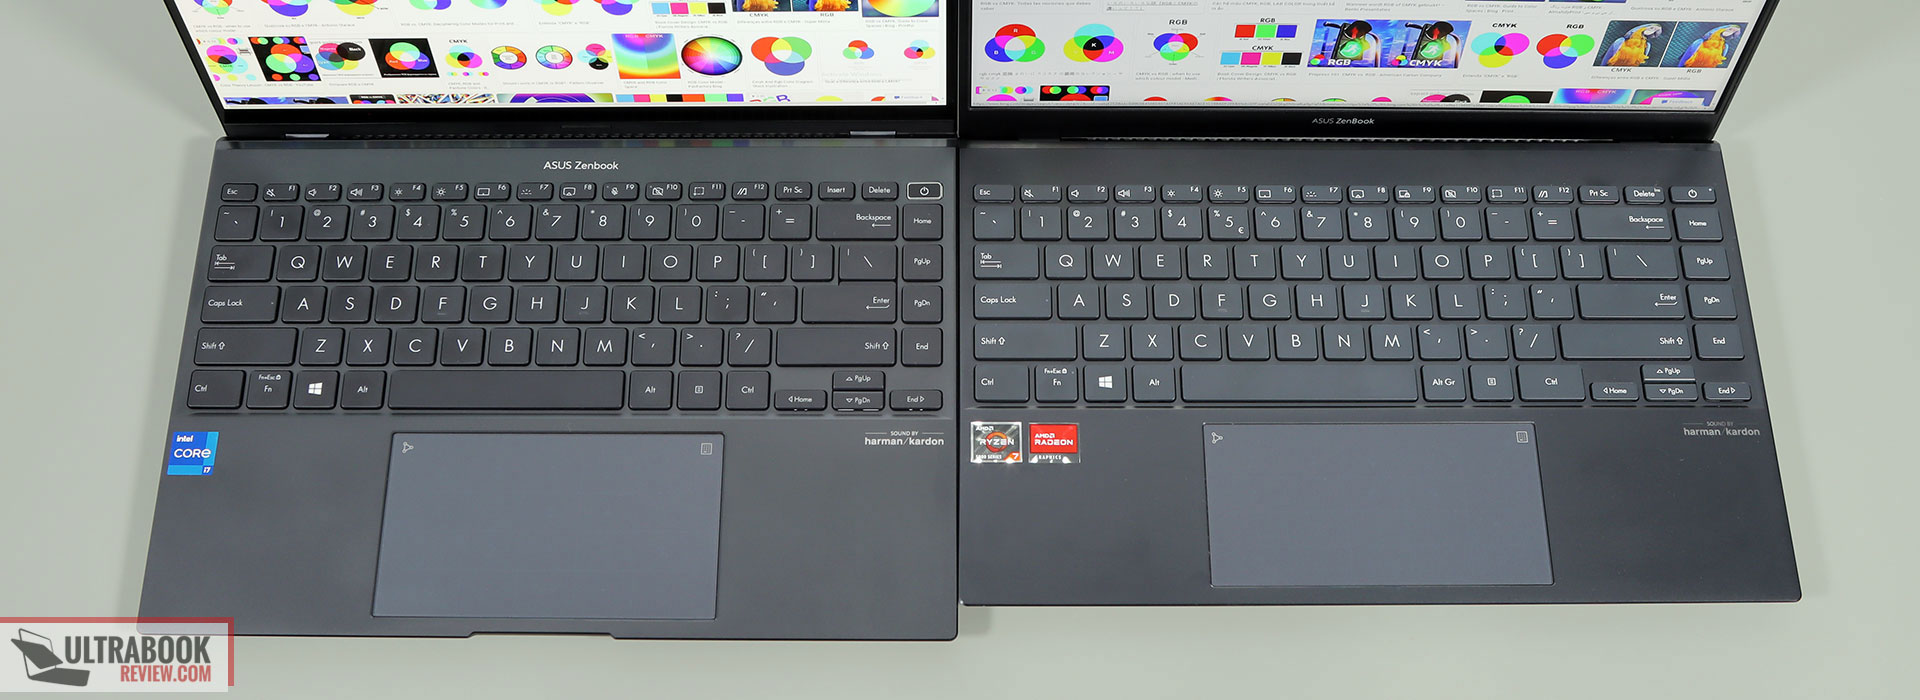 Zenbook 14x (left) vs ZenBook 14 (right)